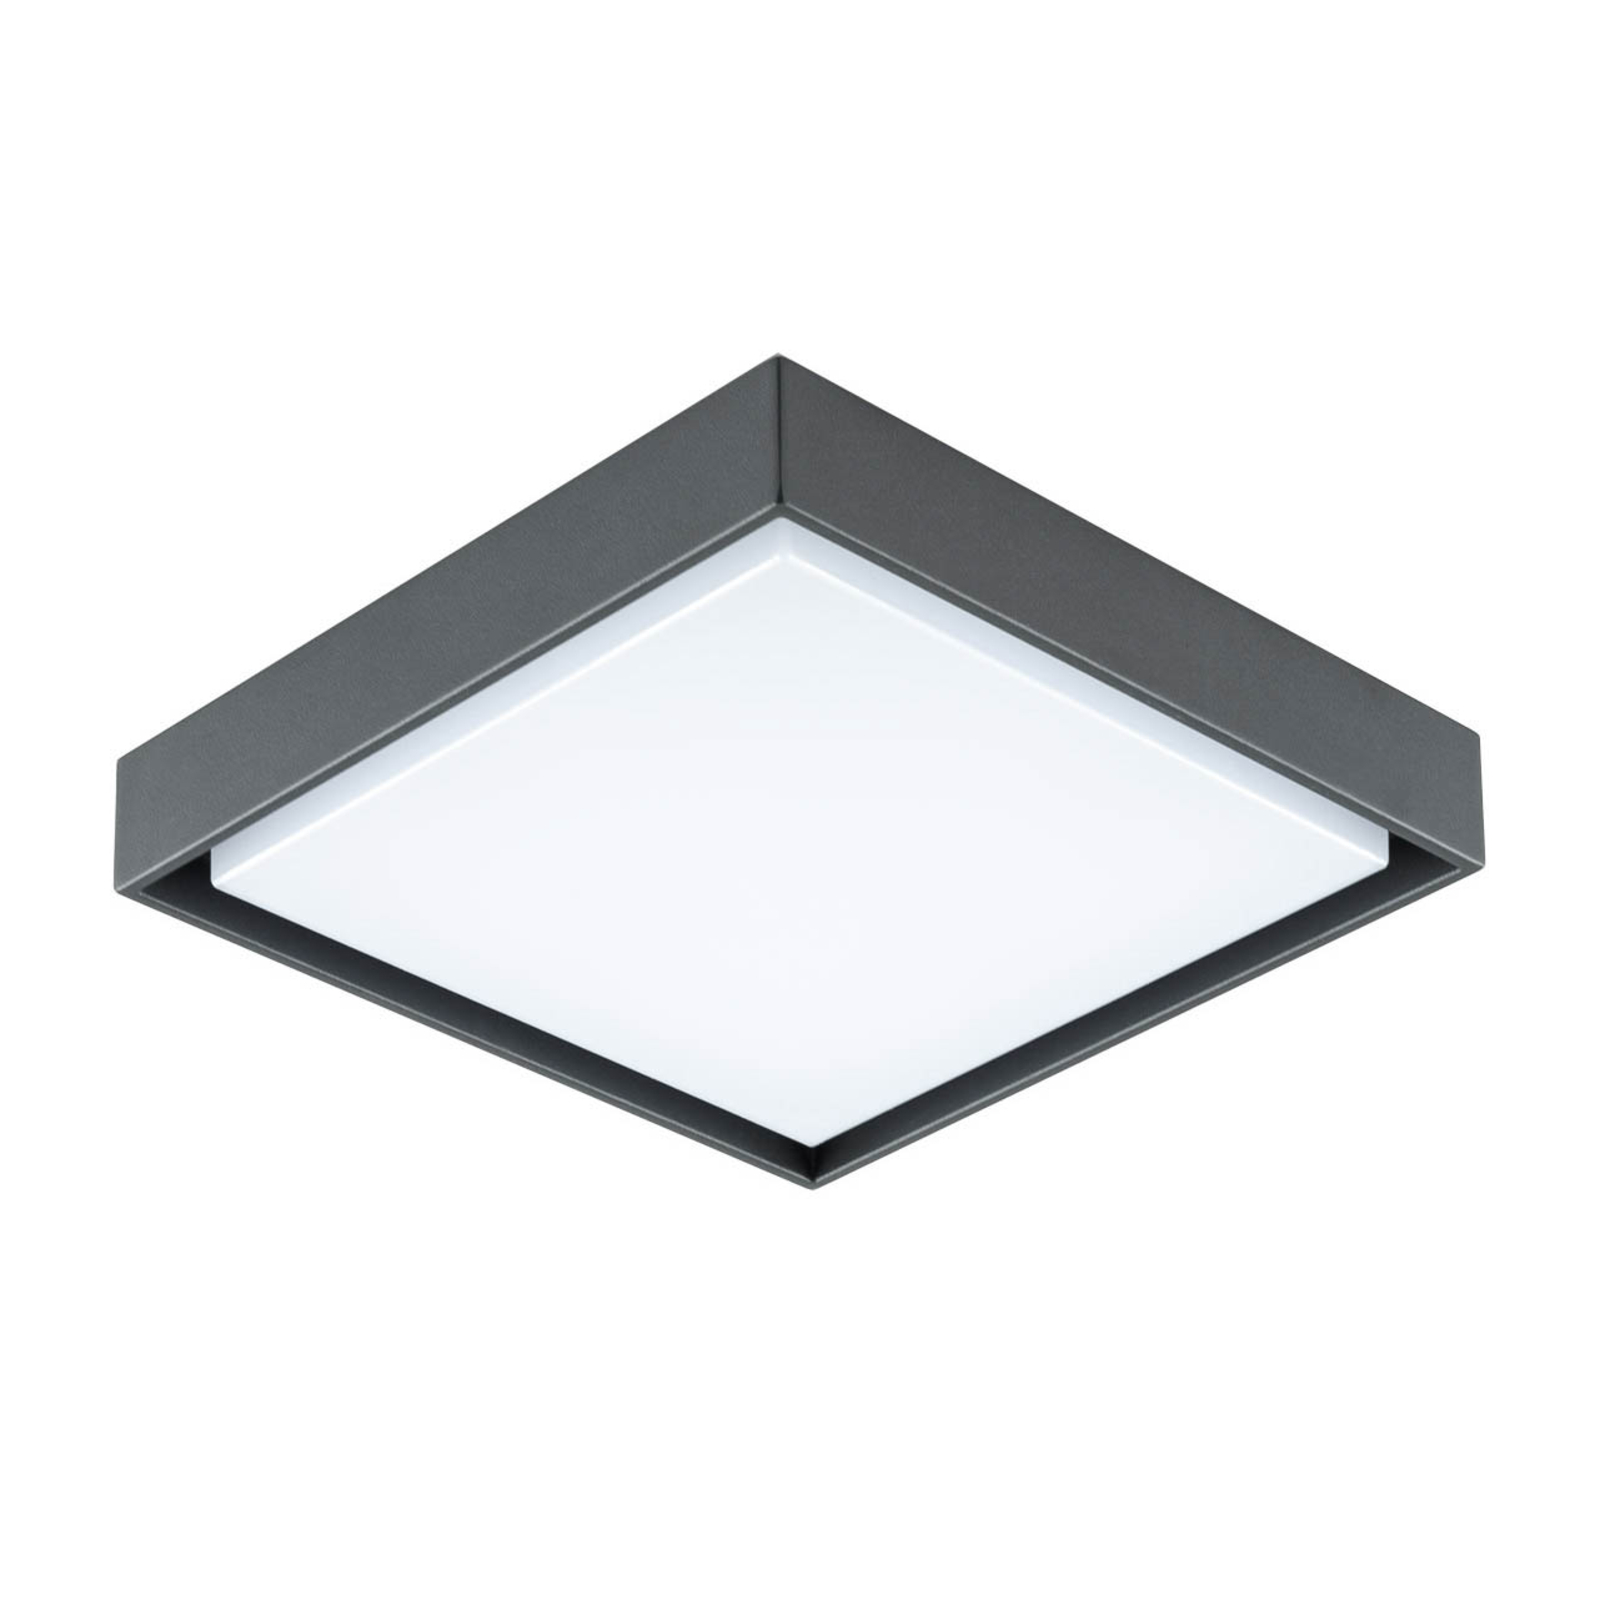 EVN Tectum LED utendørs taklampe kantet 110 grader